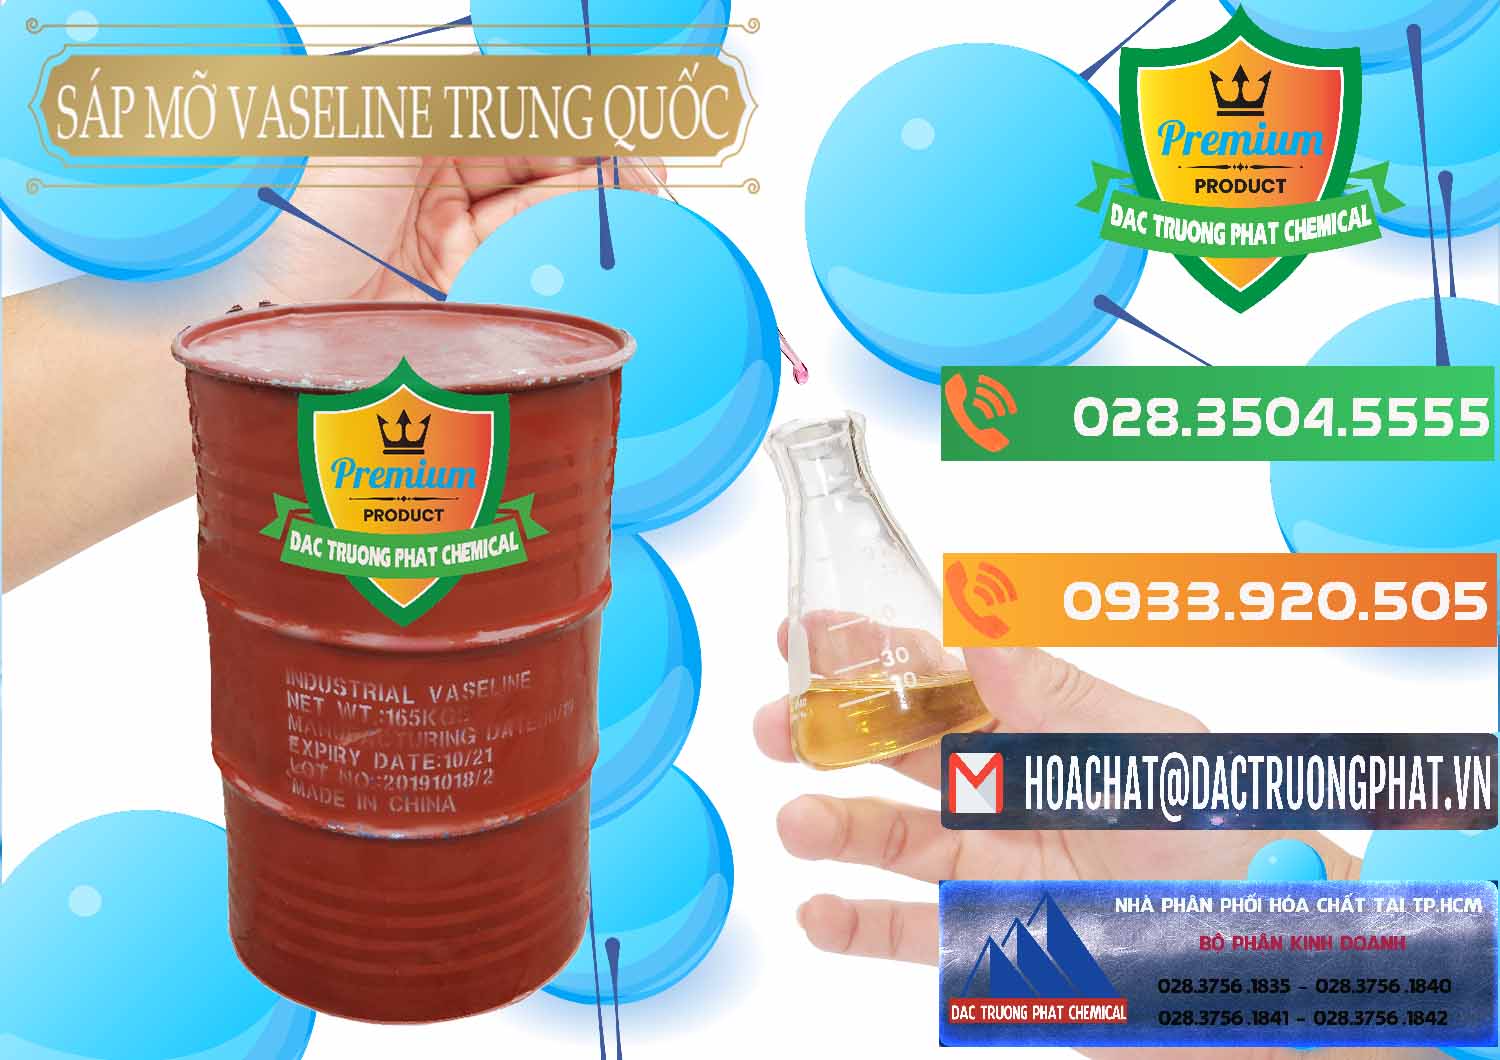 Cty kinh doanh _ bán Sáp Mỡ Vaseline Trung Quốc China - 0122 - Bán - cung cấp hóa chất tại TP.HCM - hoachatxulynuoc.com.vn